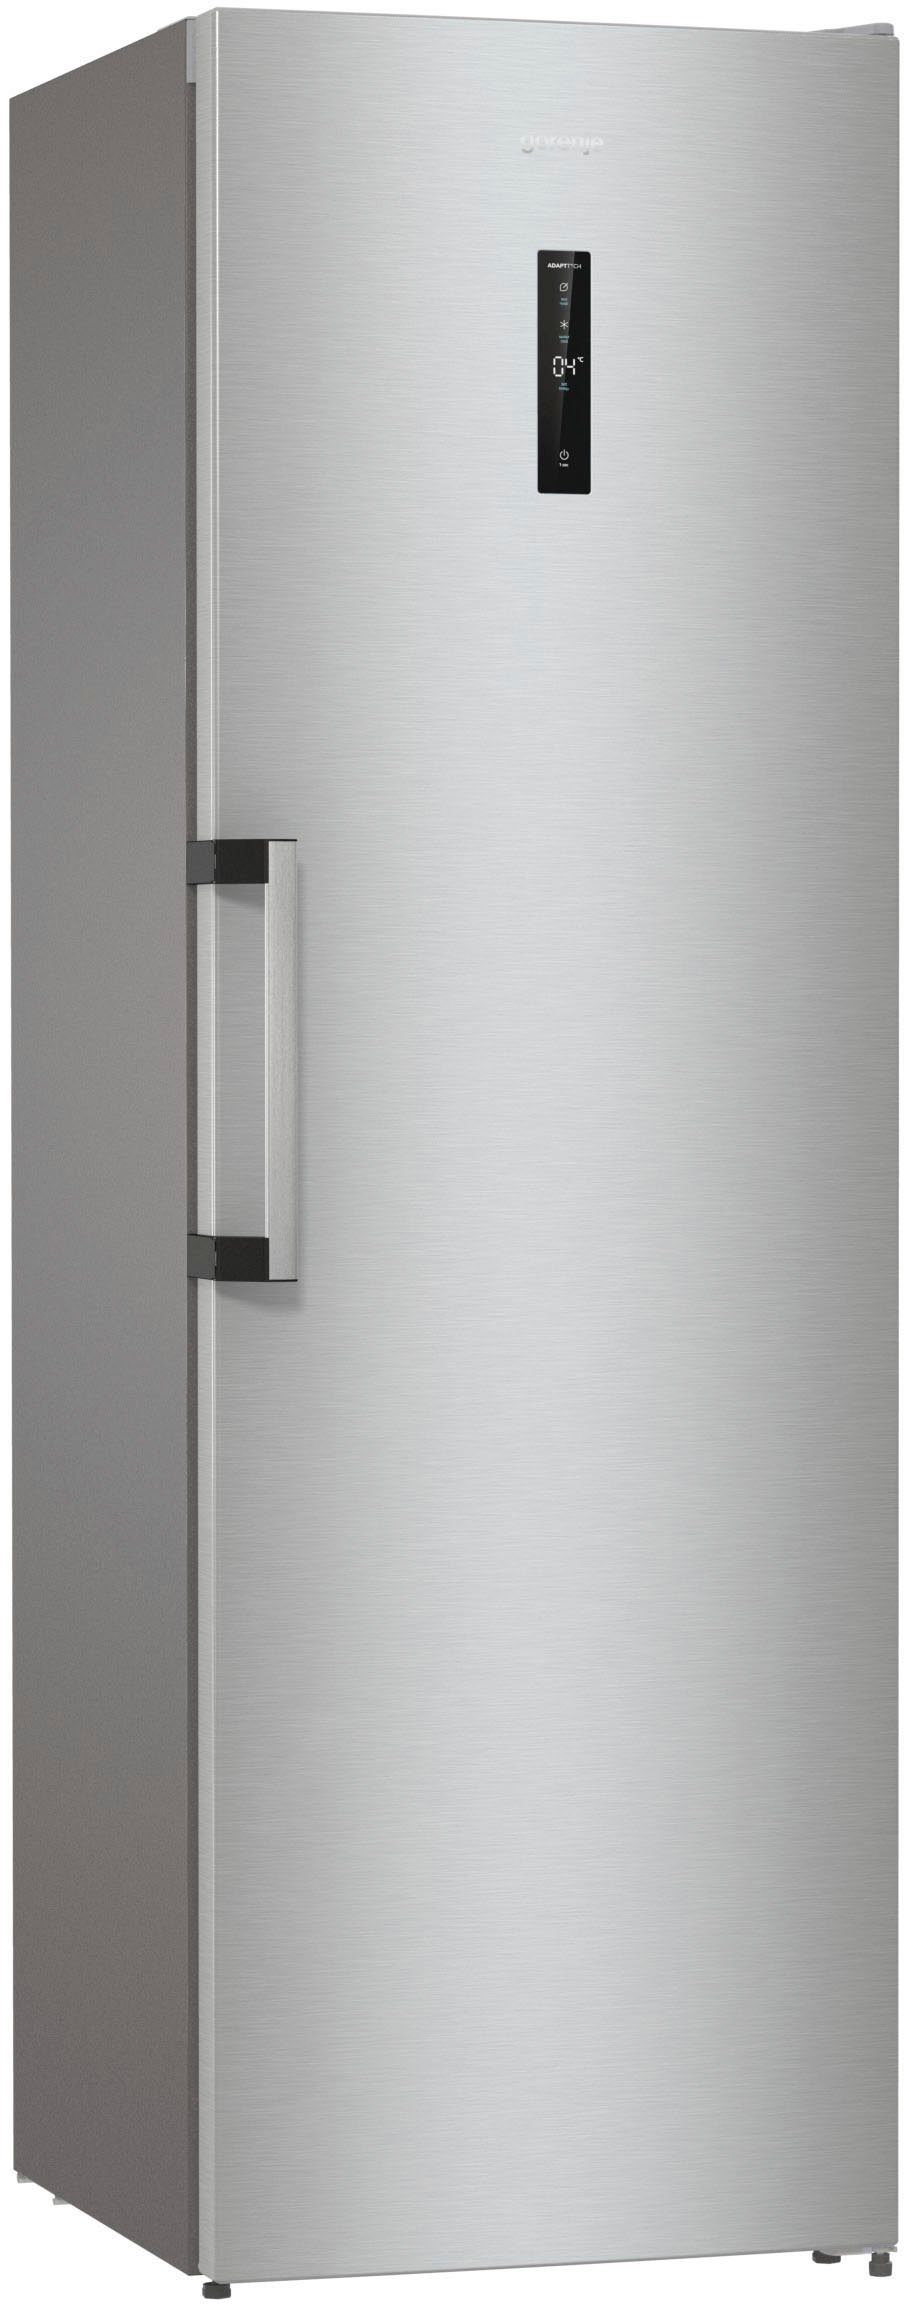 GORENJE Kühlschrank R619DAXL6, 185 cm hoch, 59,5 cm breit, Umluft-Kühlung  mit QuickCooling-Funktion